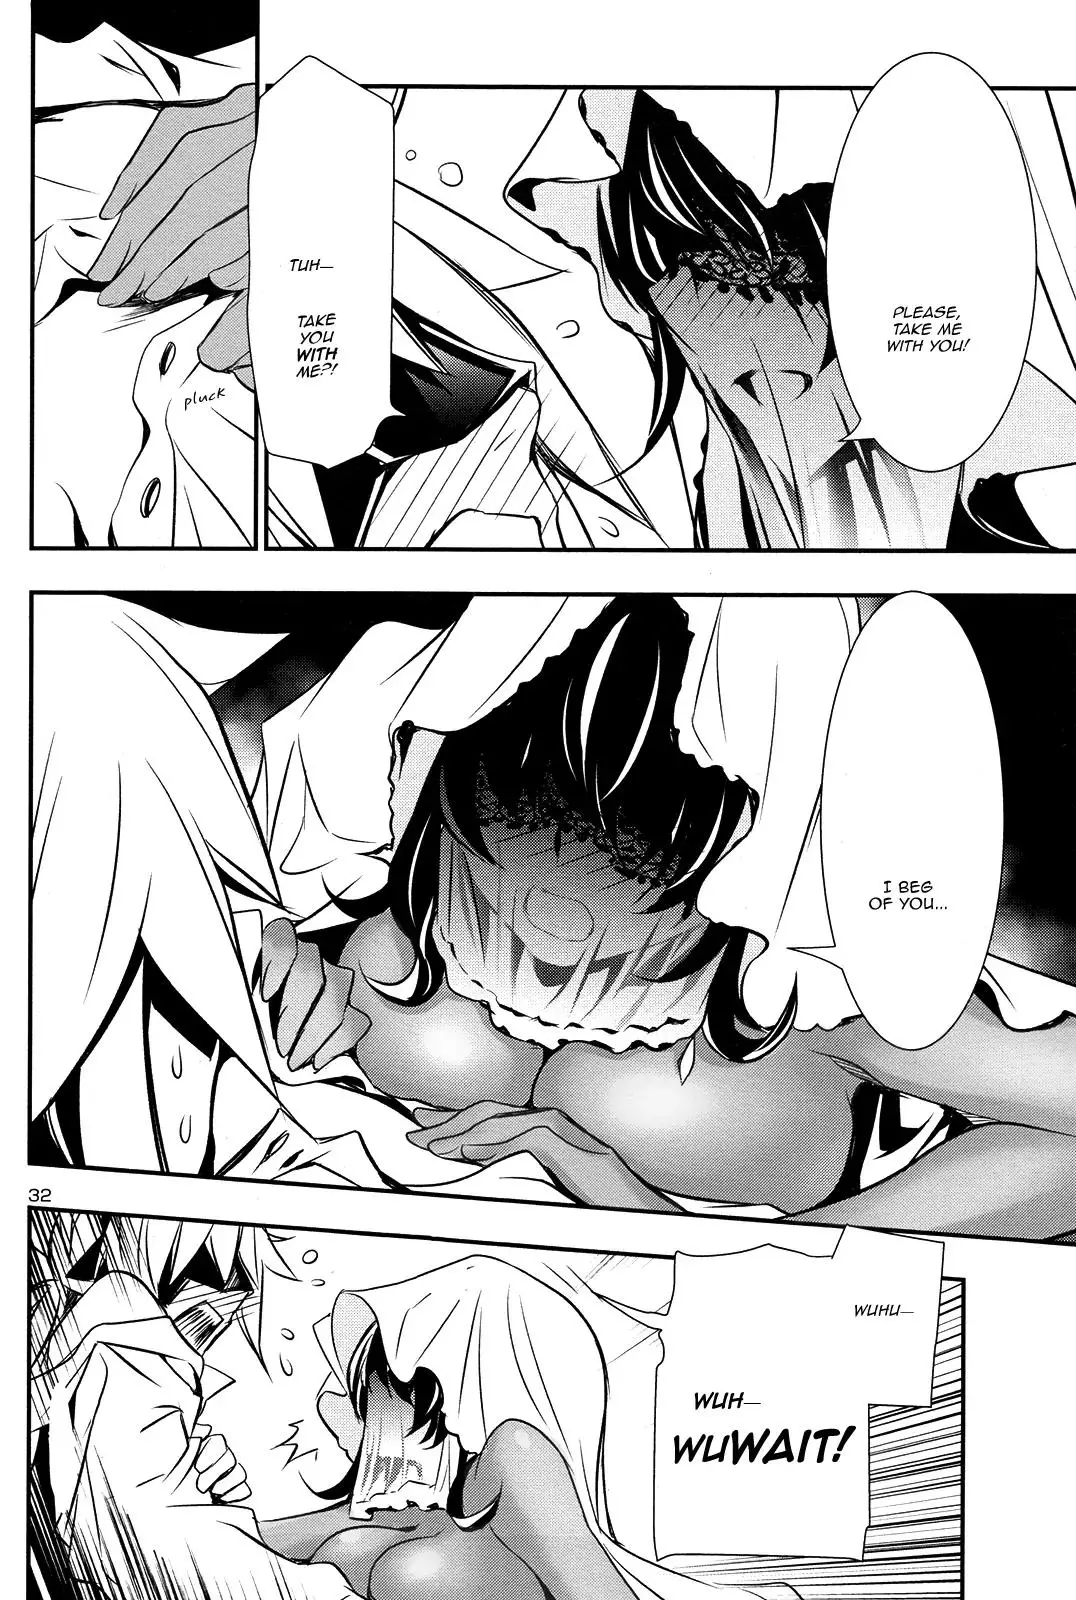 Shinju no Nectar - 9 page 30